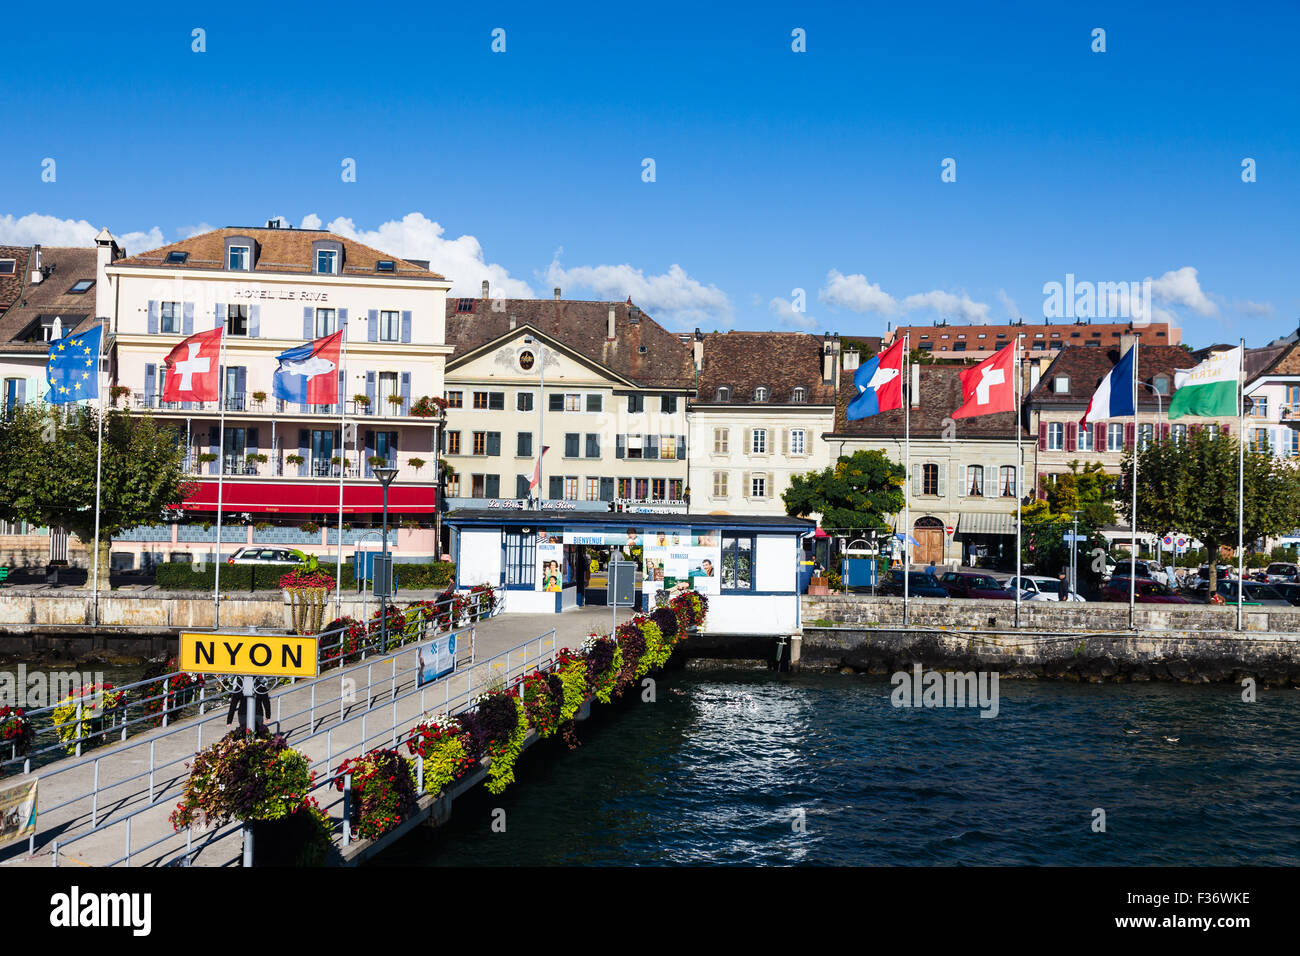 Blick aufs Wasser der Stadt Nyon am Genfer See, Schweiz Stockfotografie -  Alamy